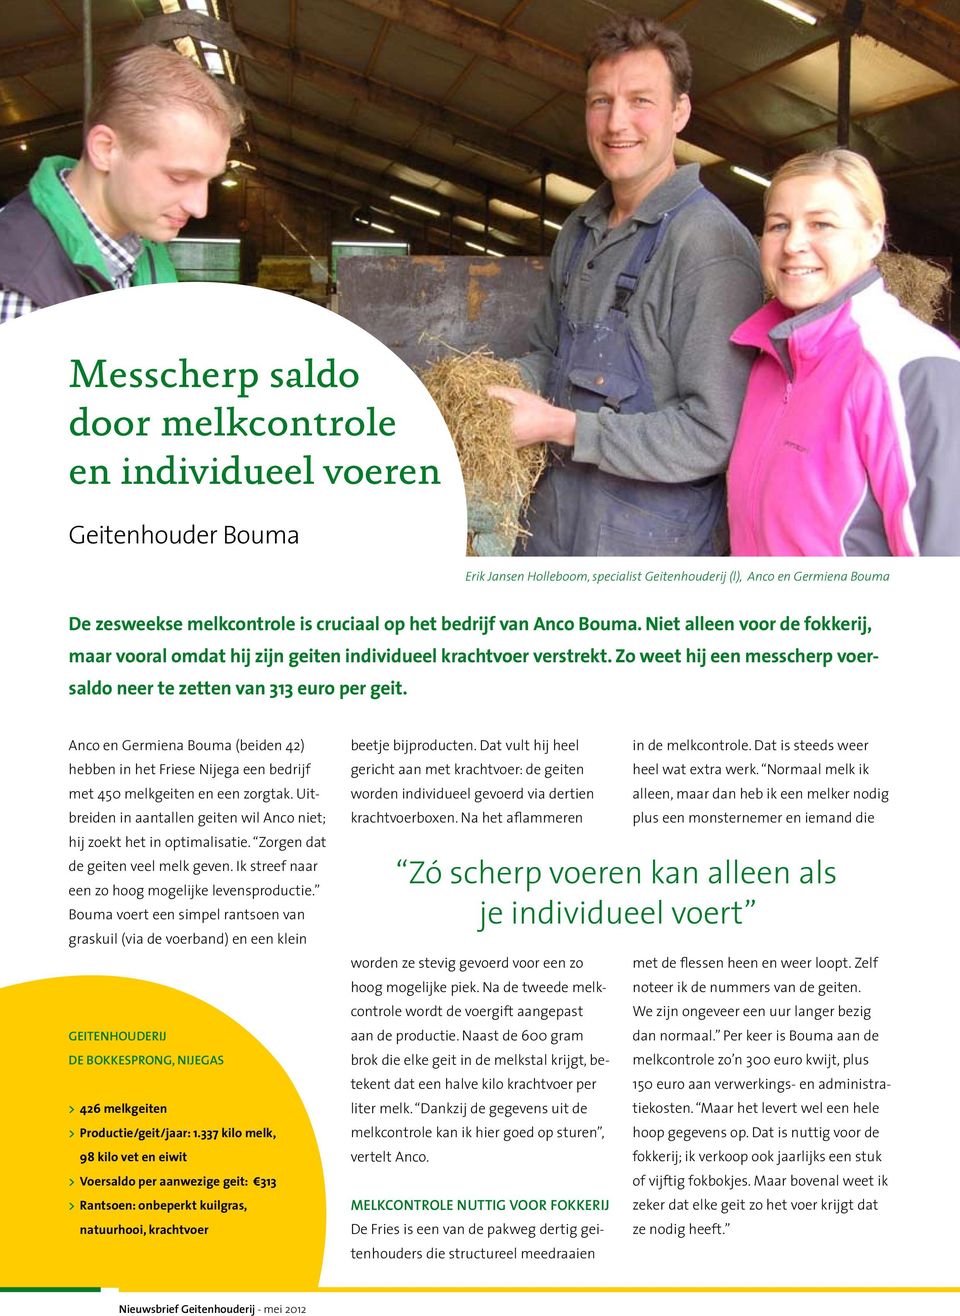 Anco en Germiena Bouma (beiden 42) hebben in het Friese Nijega een bedrijf met 450 melkgeiten en een zorgtak. Uitbreiden in aantallen geiten wil Anco niet; hij zoekt het in optimalisatie.